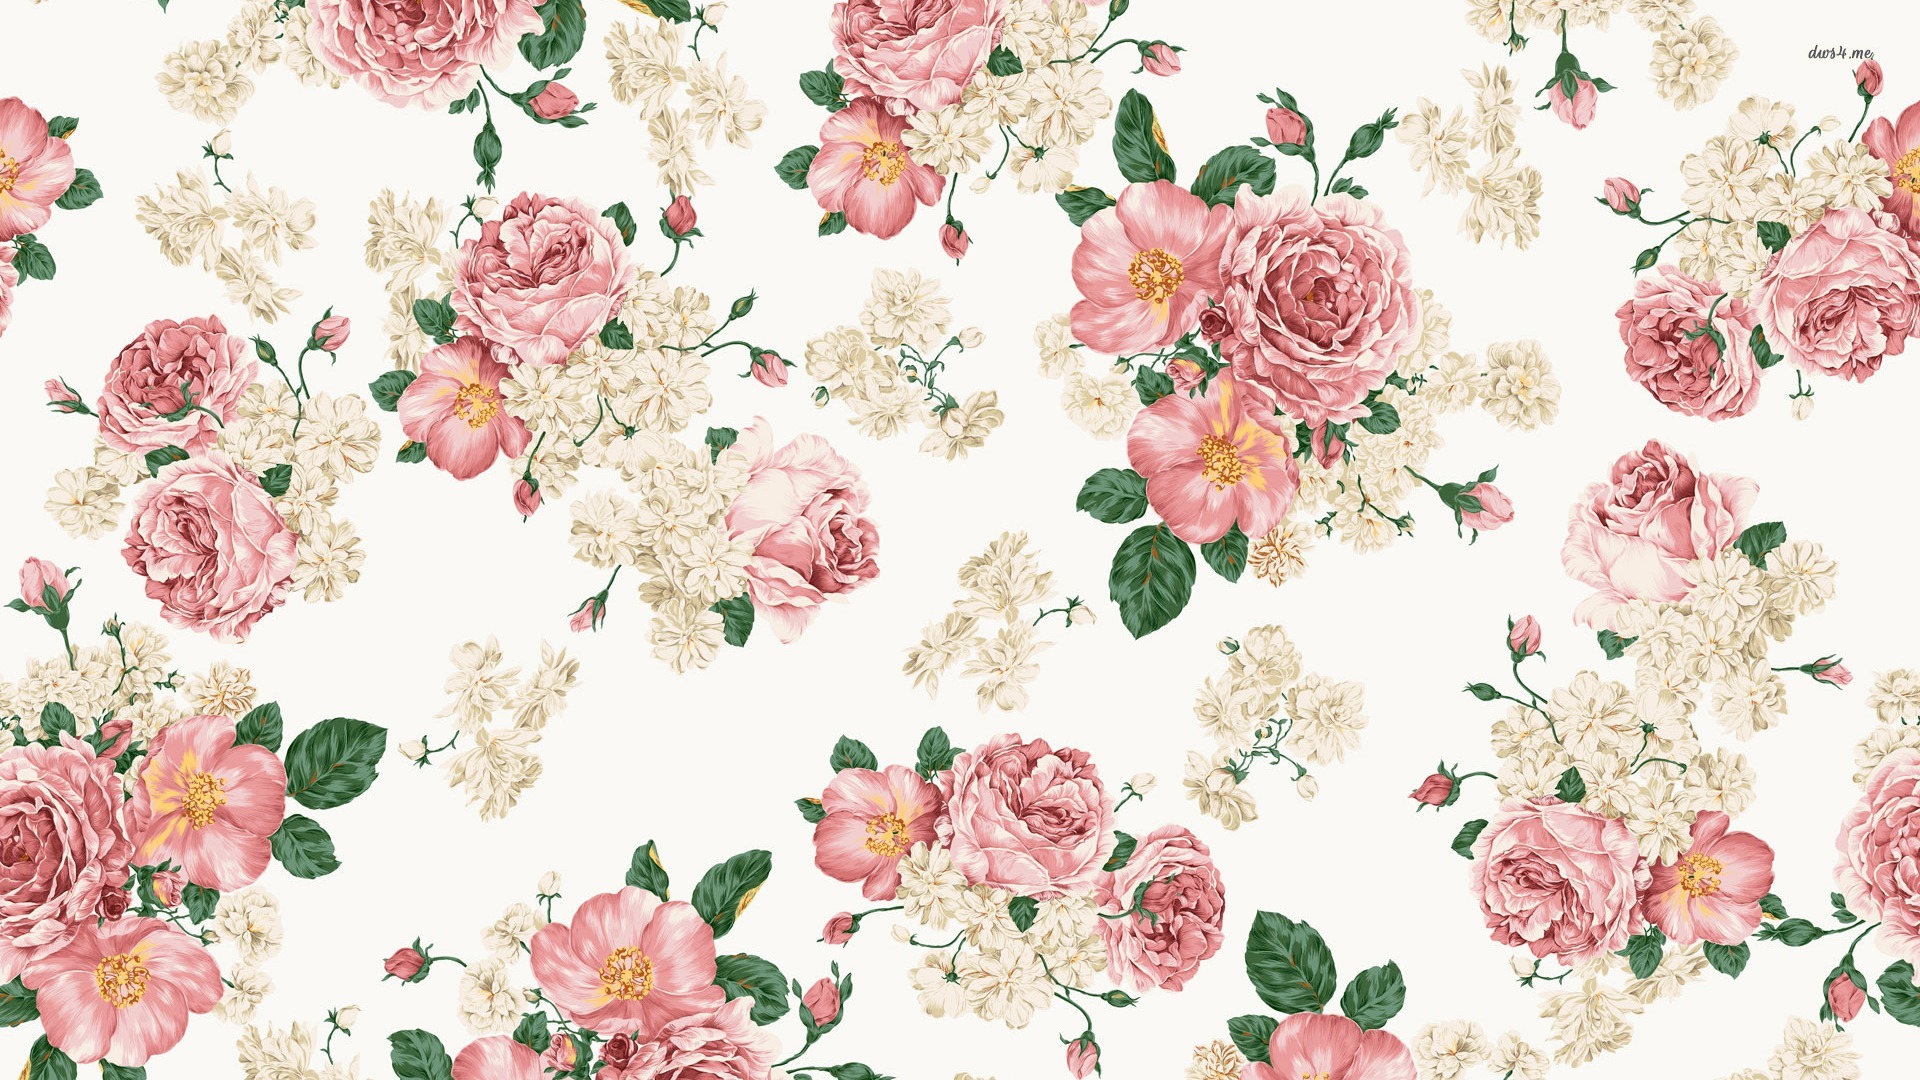 Vintage Pink Roses Wallpaper